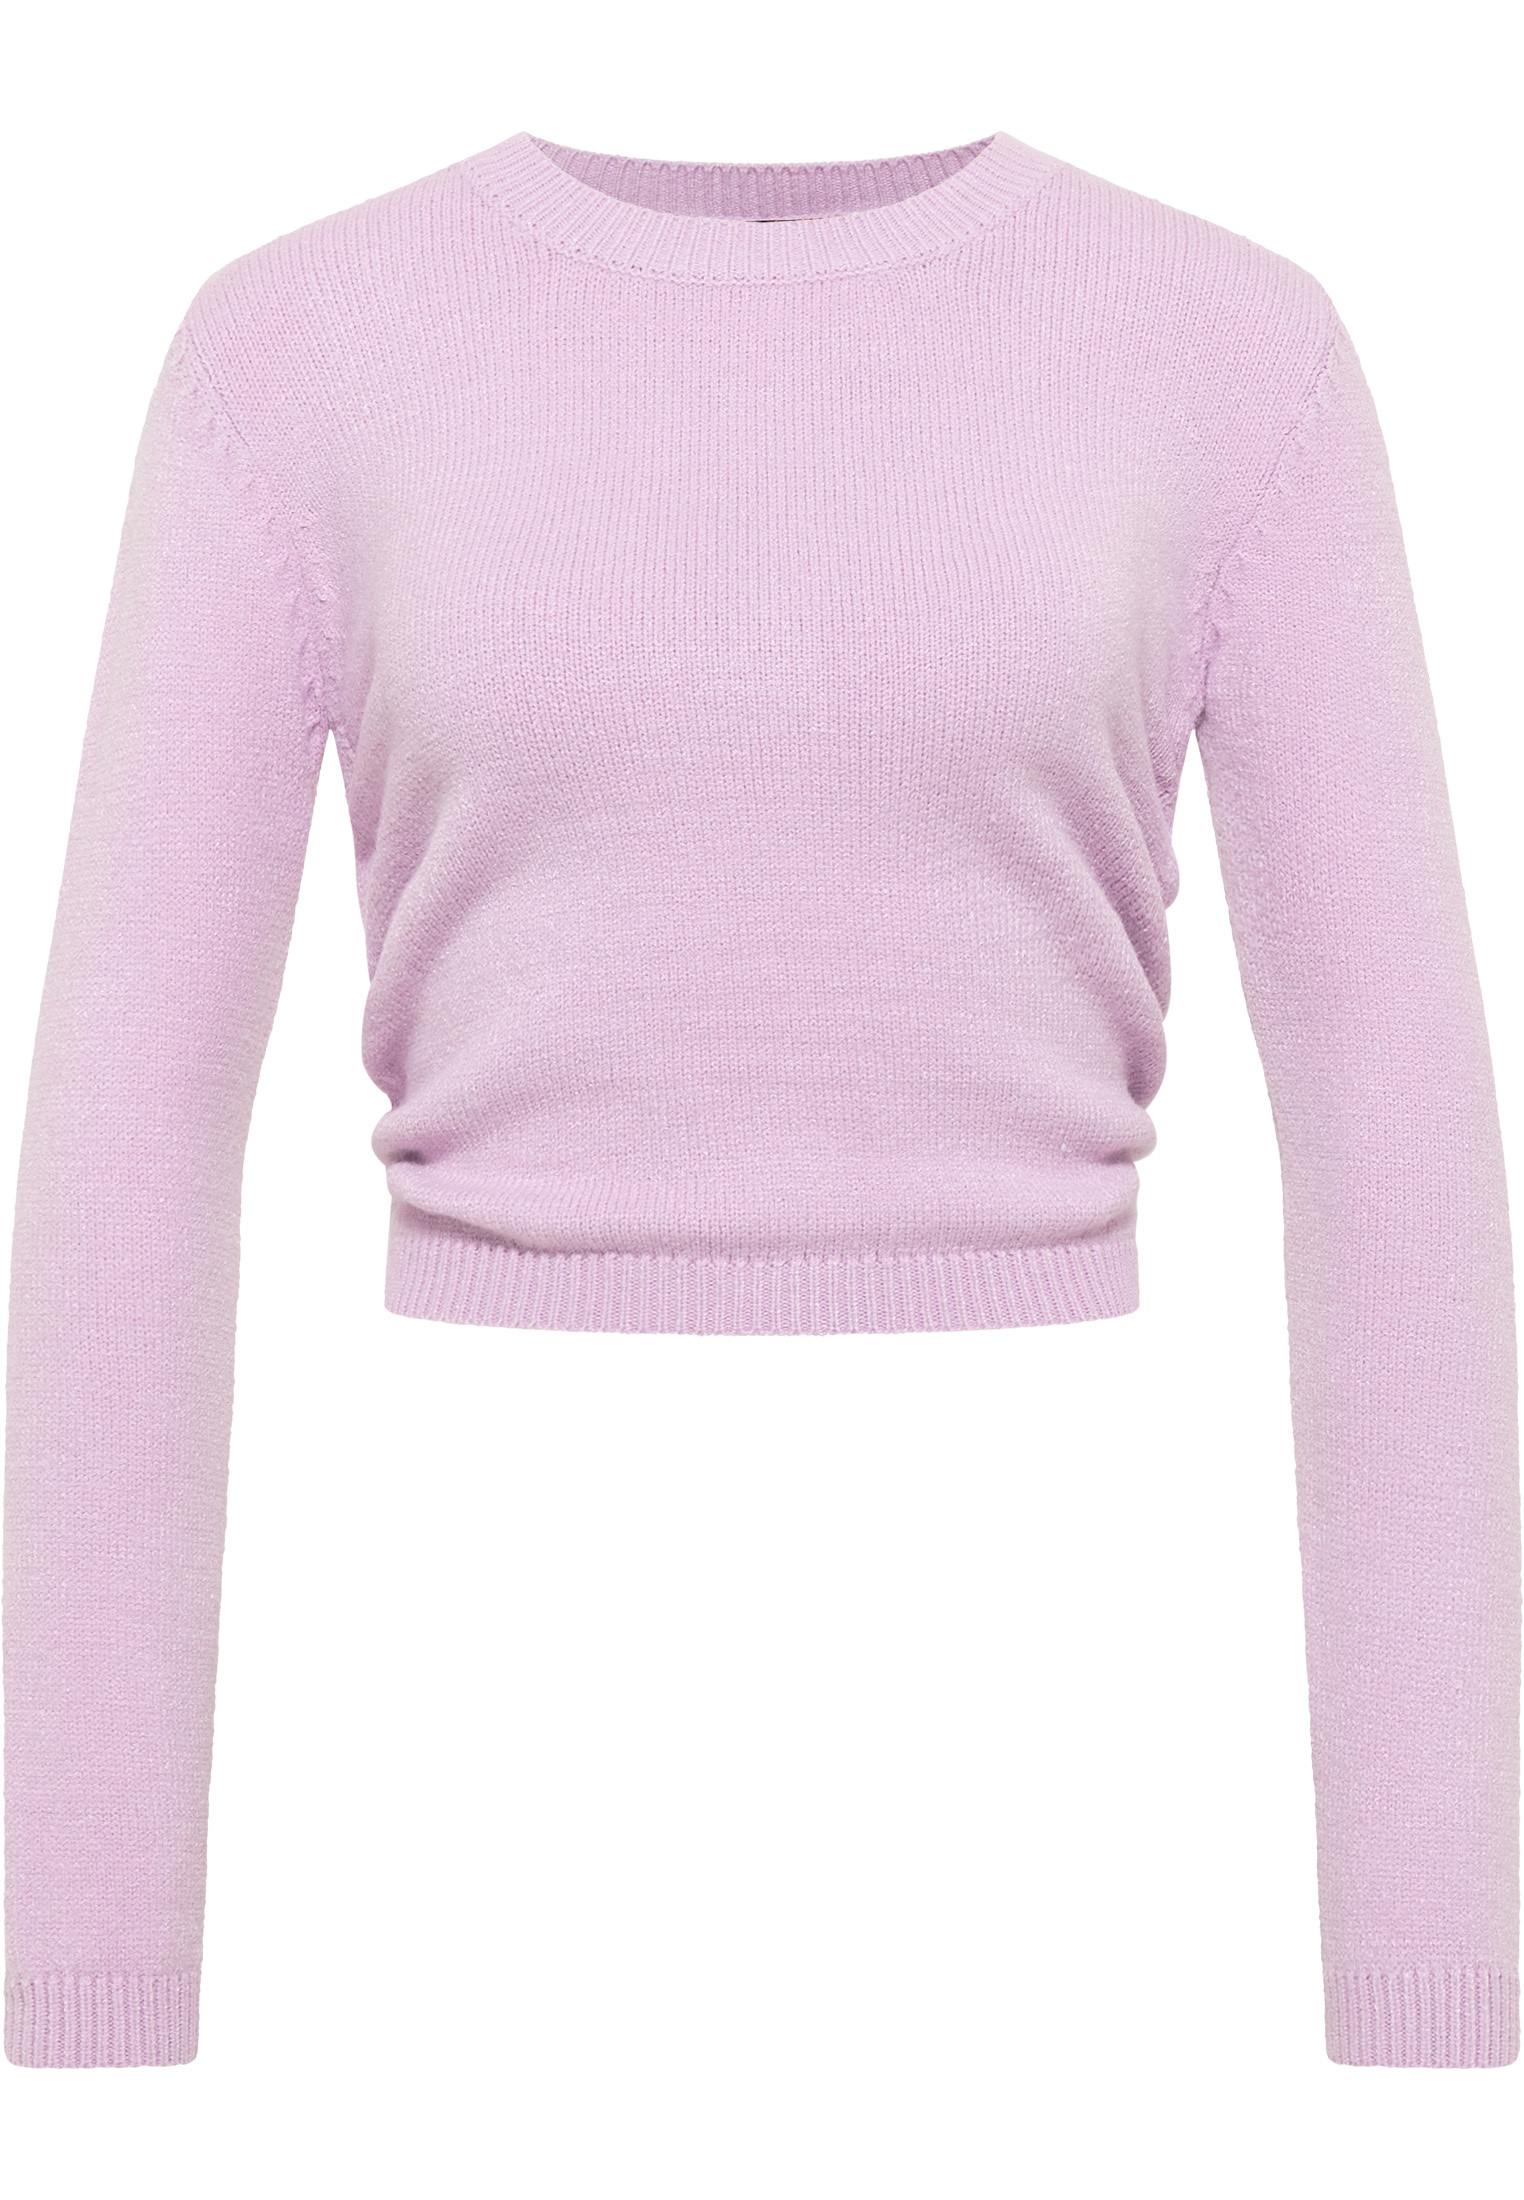 Odzież Plus size myMo at night Sweter w kolorze Liliowym 